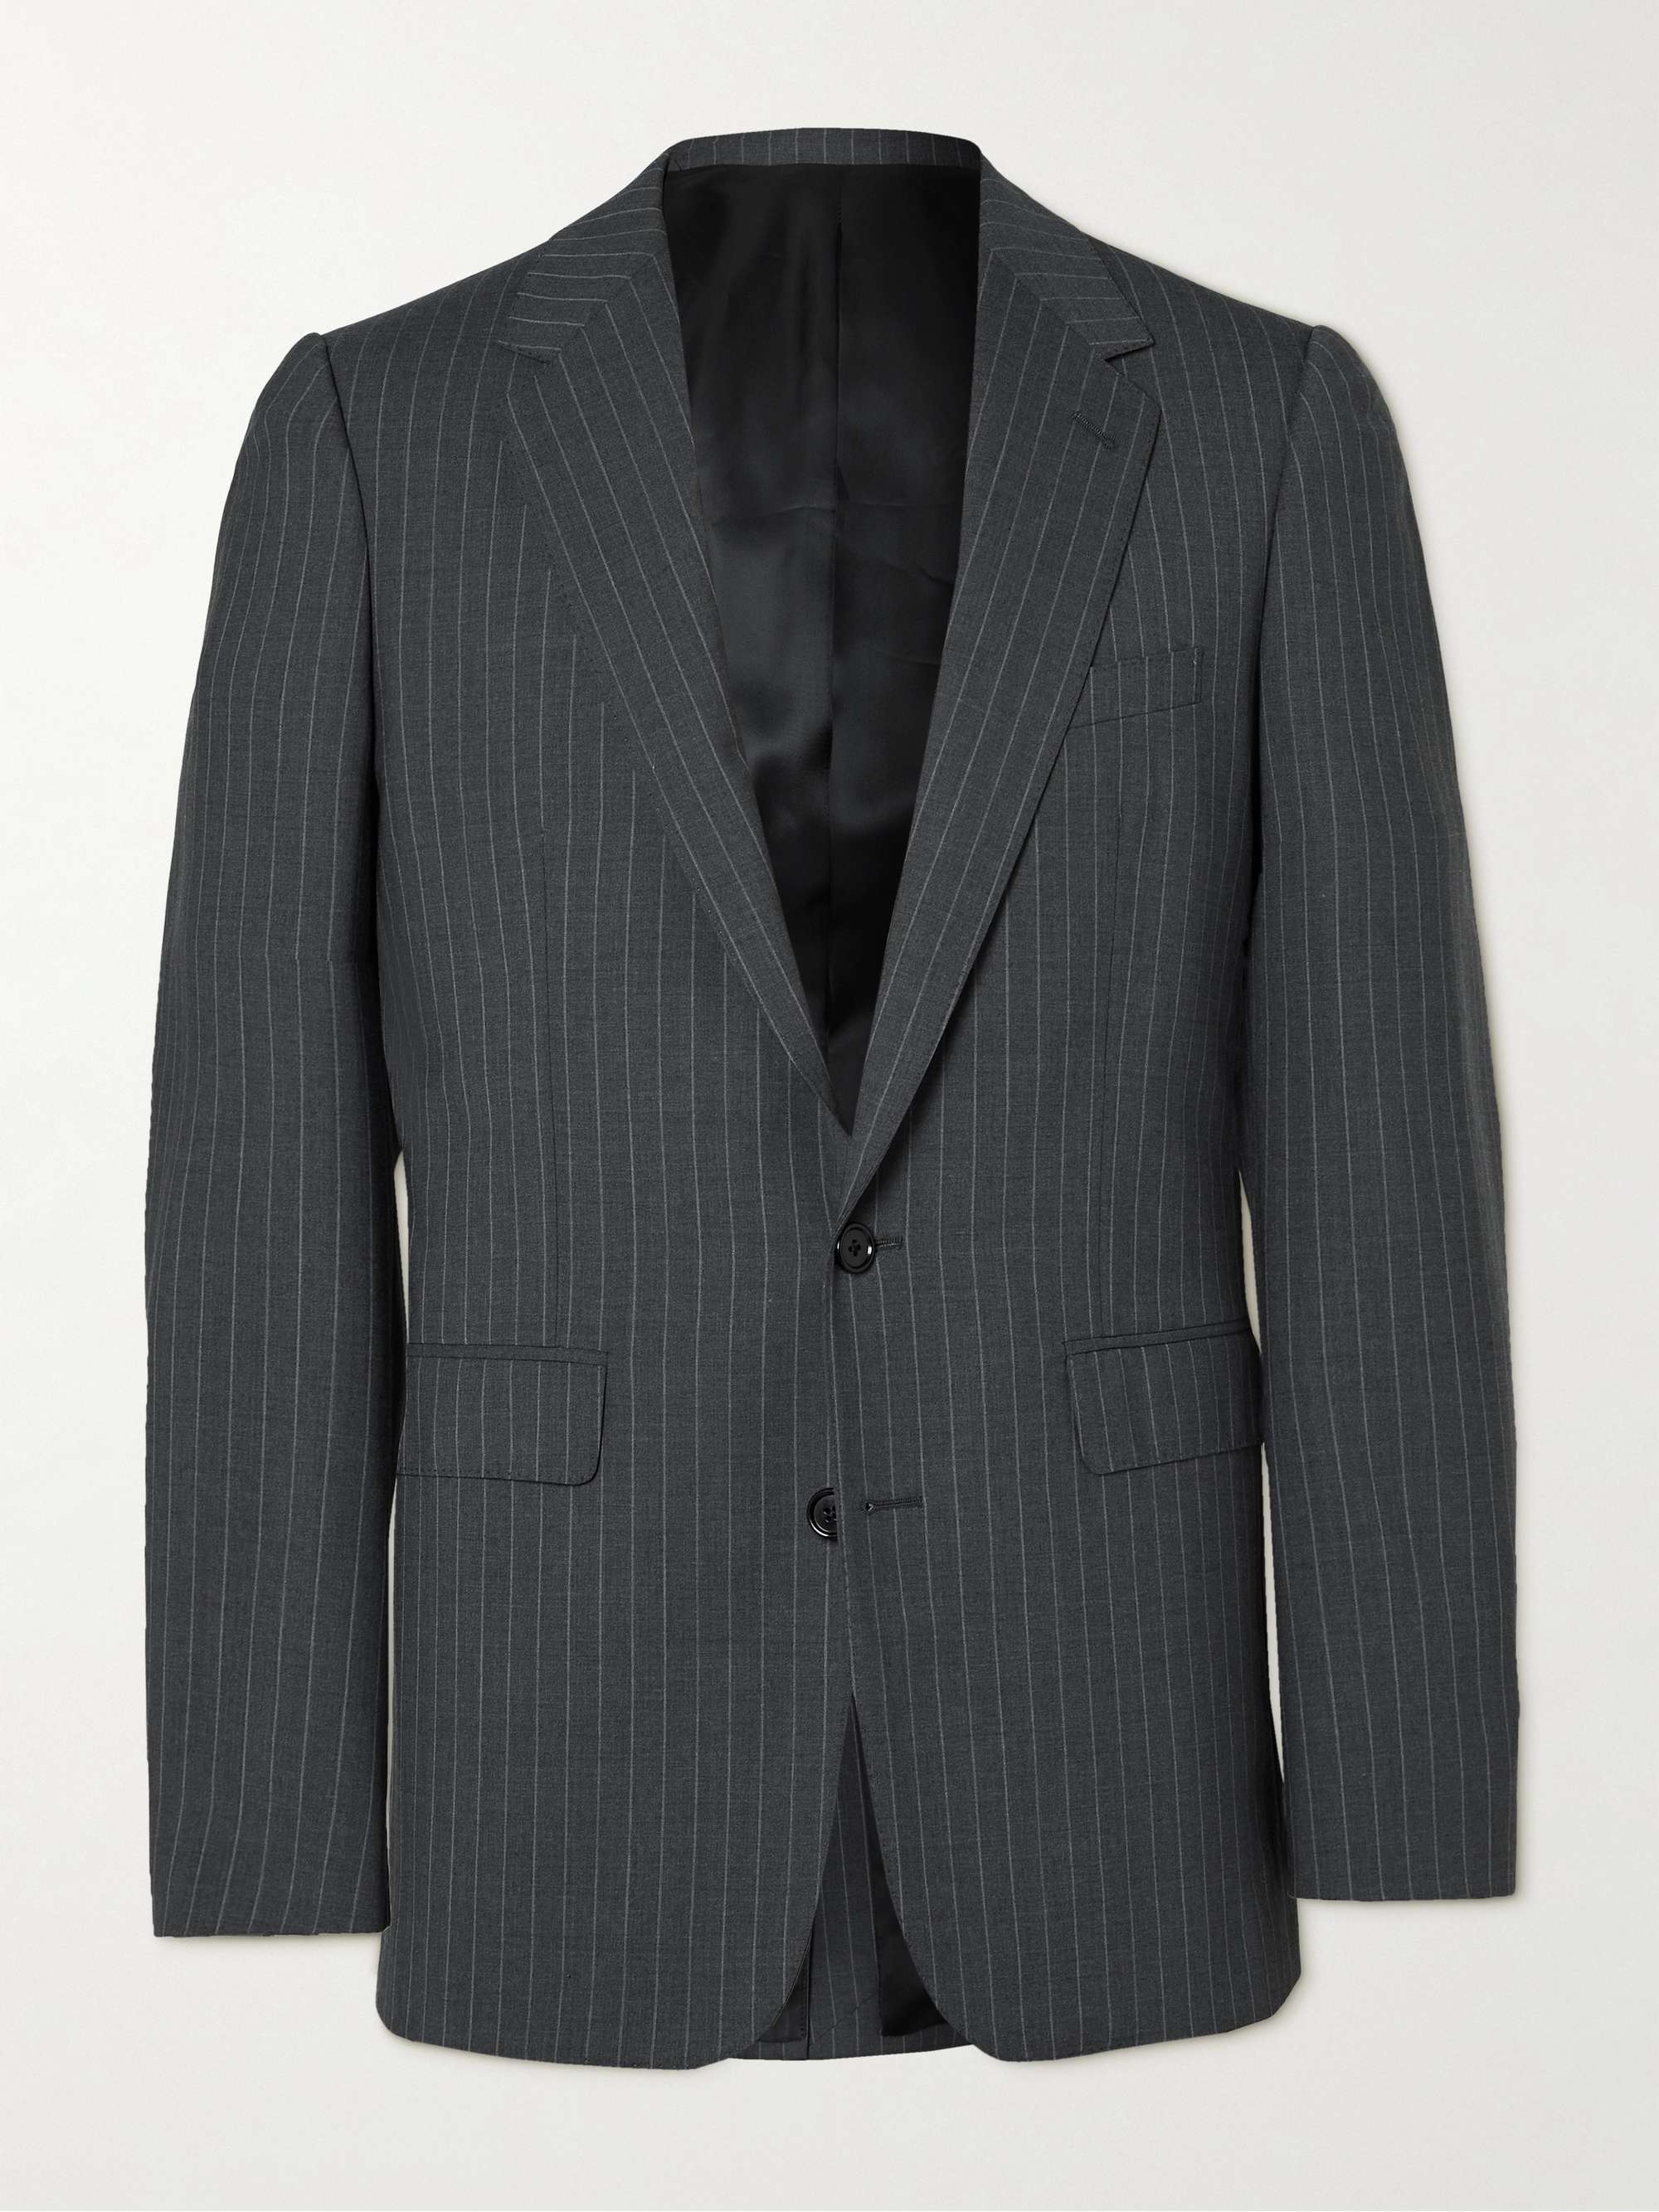 CELINE HOMME Pinstriped Wool Blazer for Men | MR PORTER